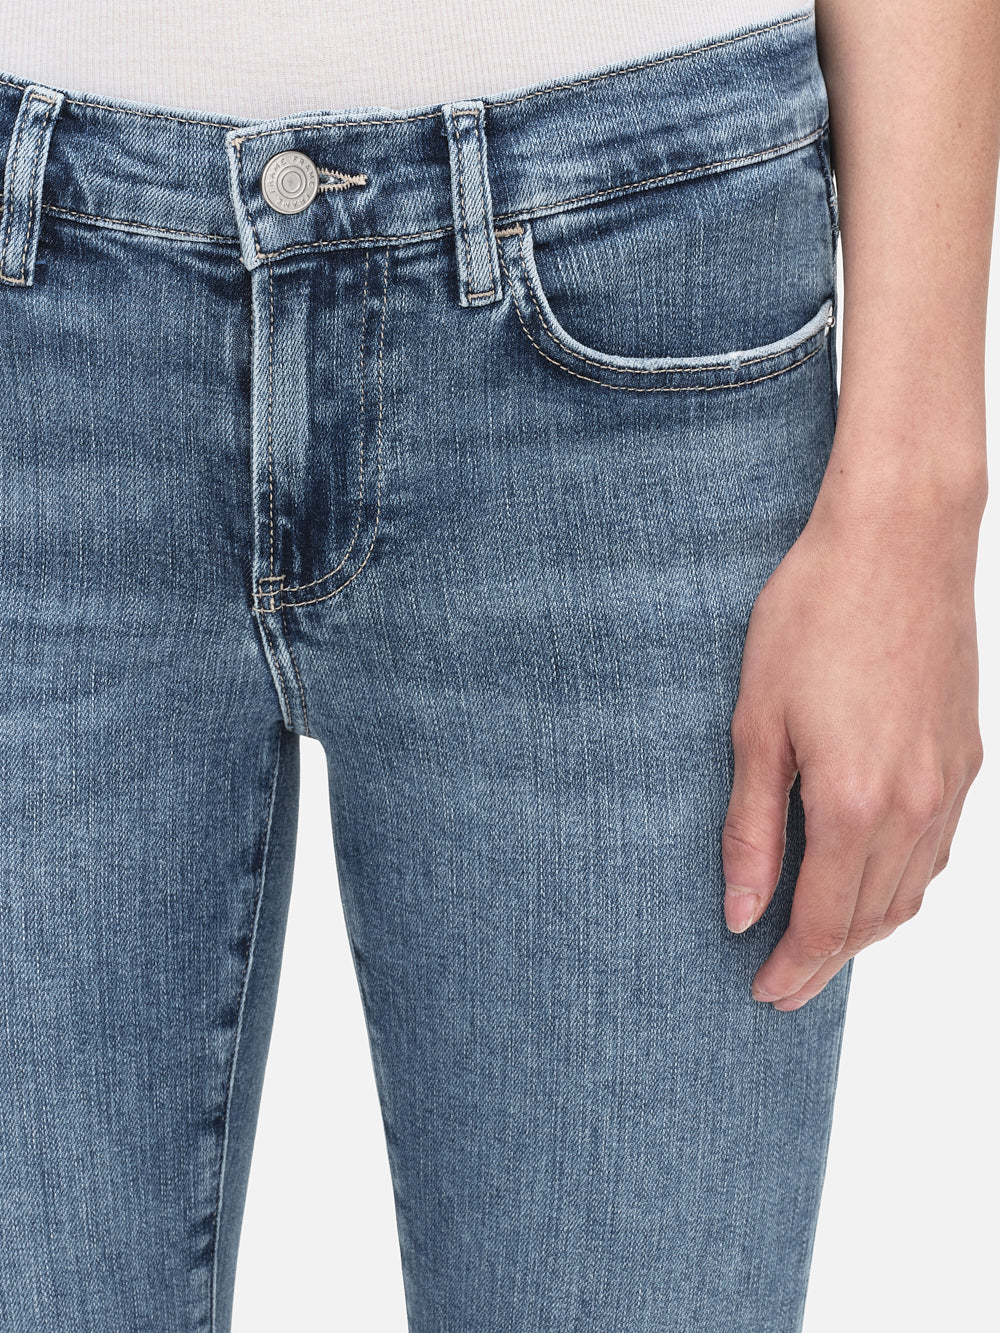 Boyfriend jeans Escada Navy size 36 FR in Cotton - 39395900